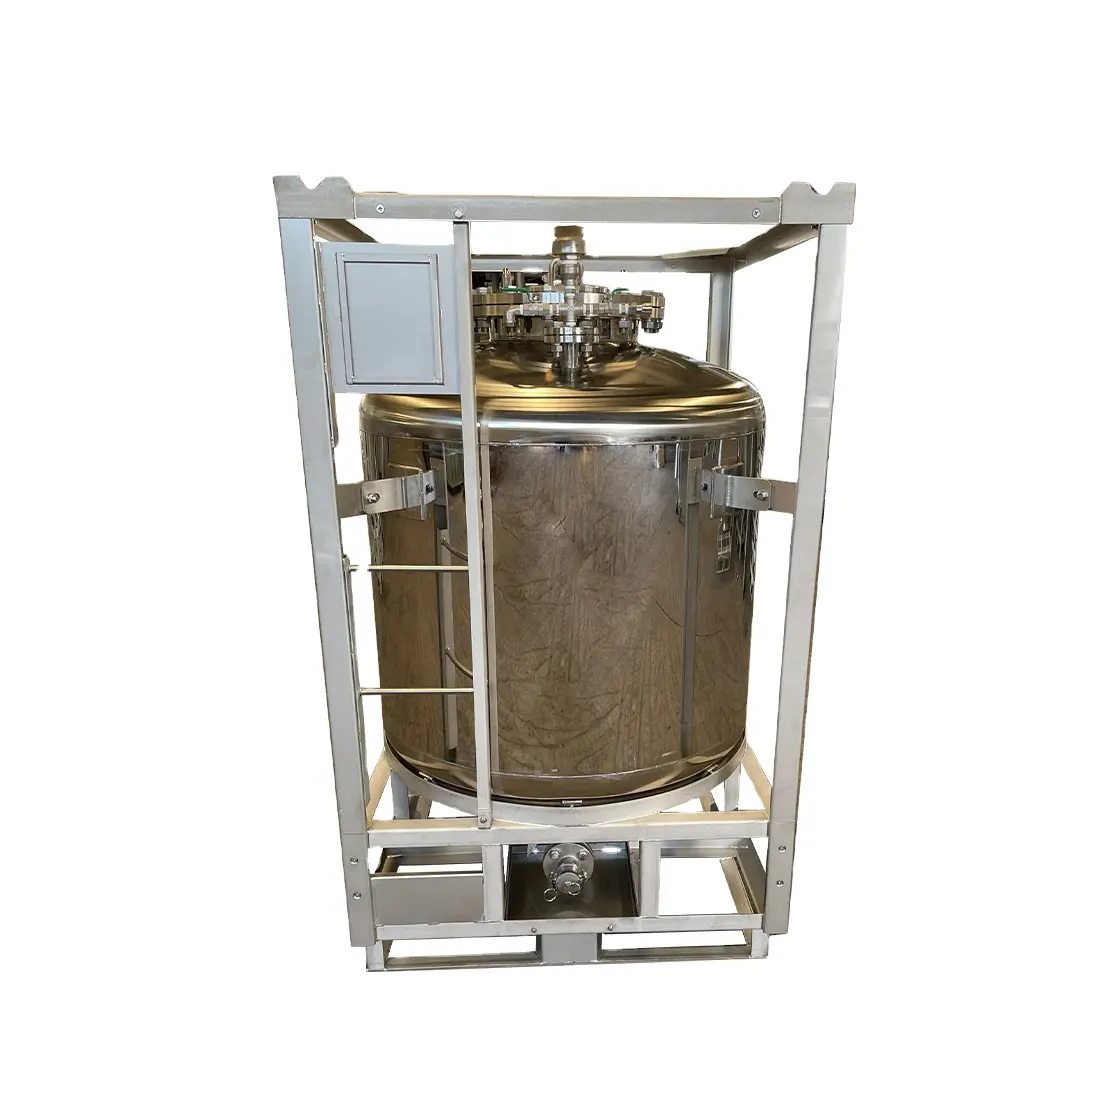 ジュースワイン貯蔵タンク用1000L研磨食品グレード圧力タンクOEM卸売